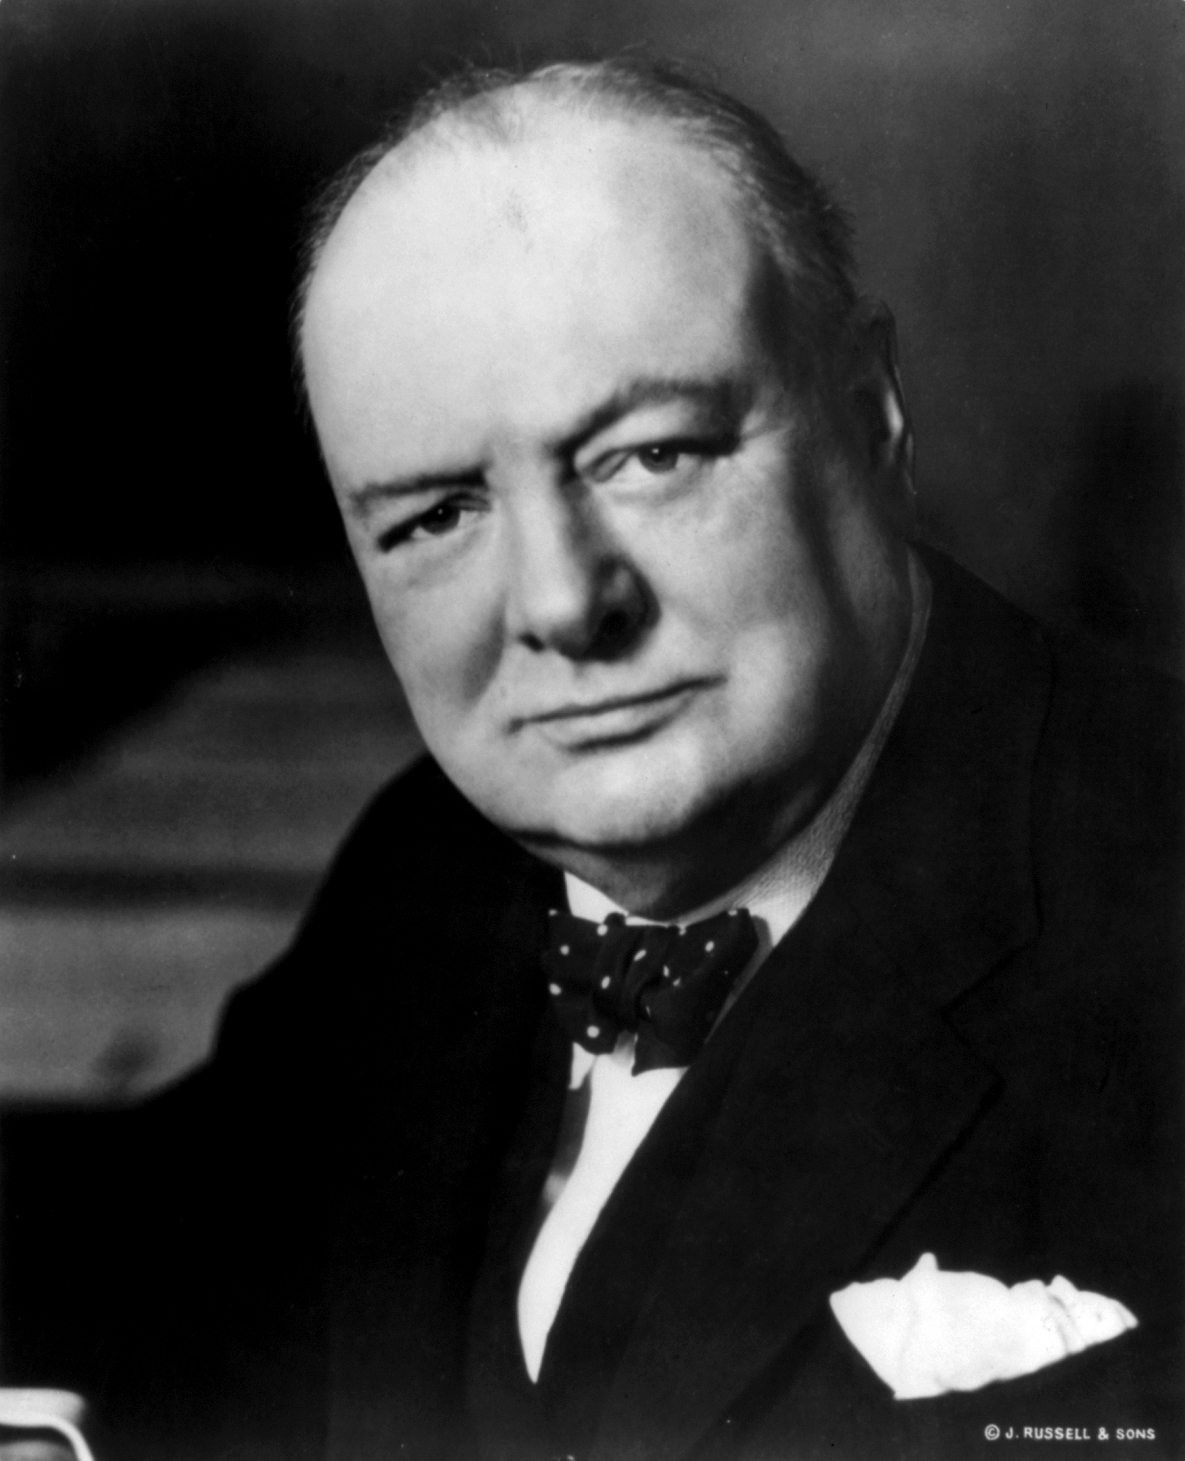 Winston Churchill - November 30, 1874 - January 24, 1965